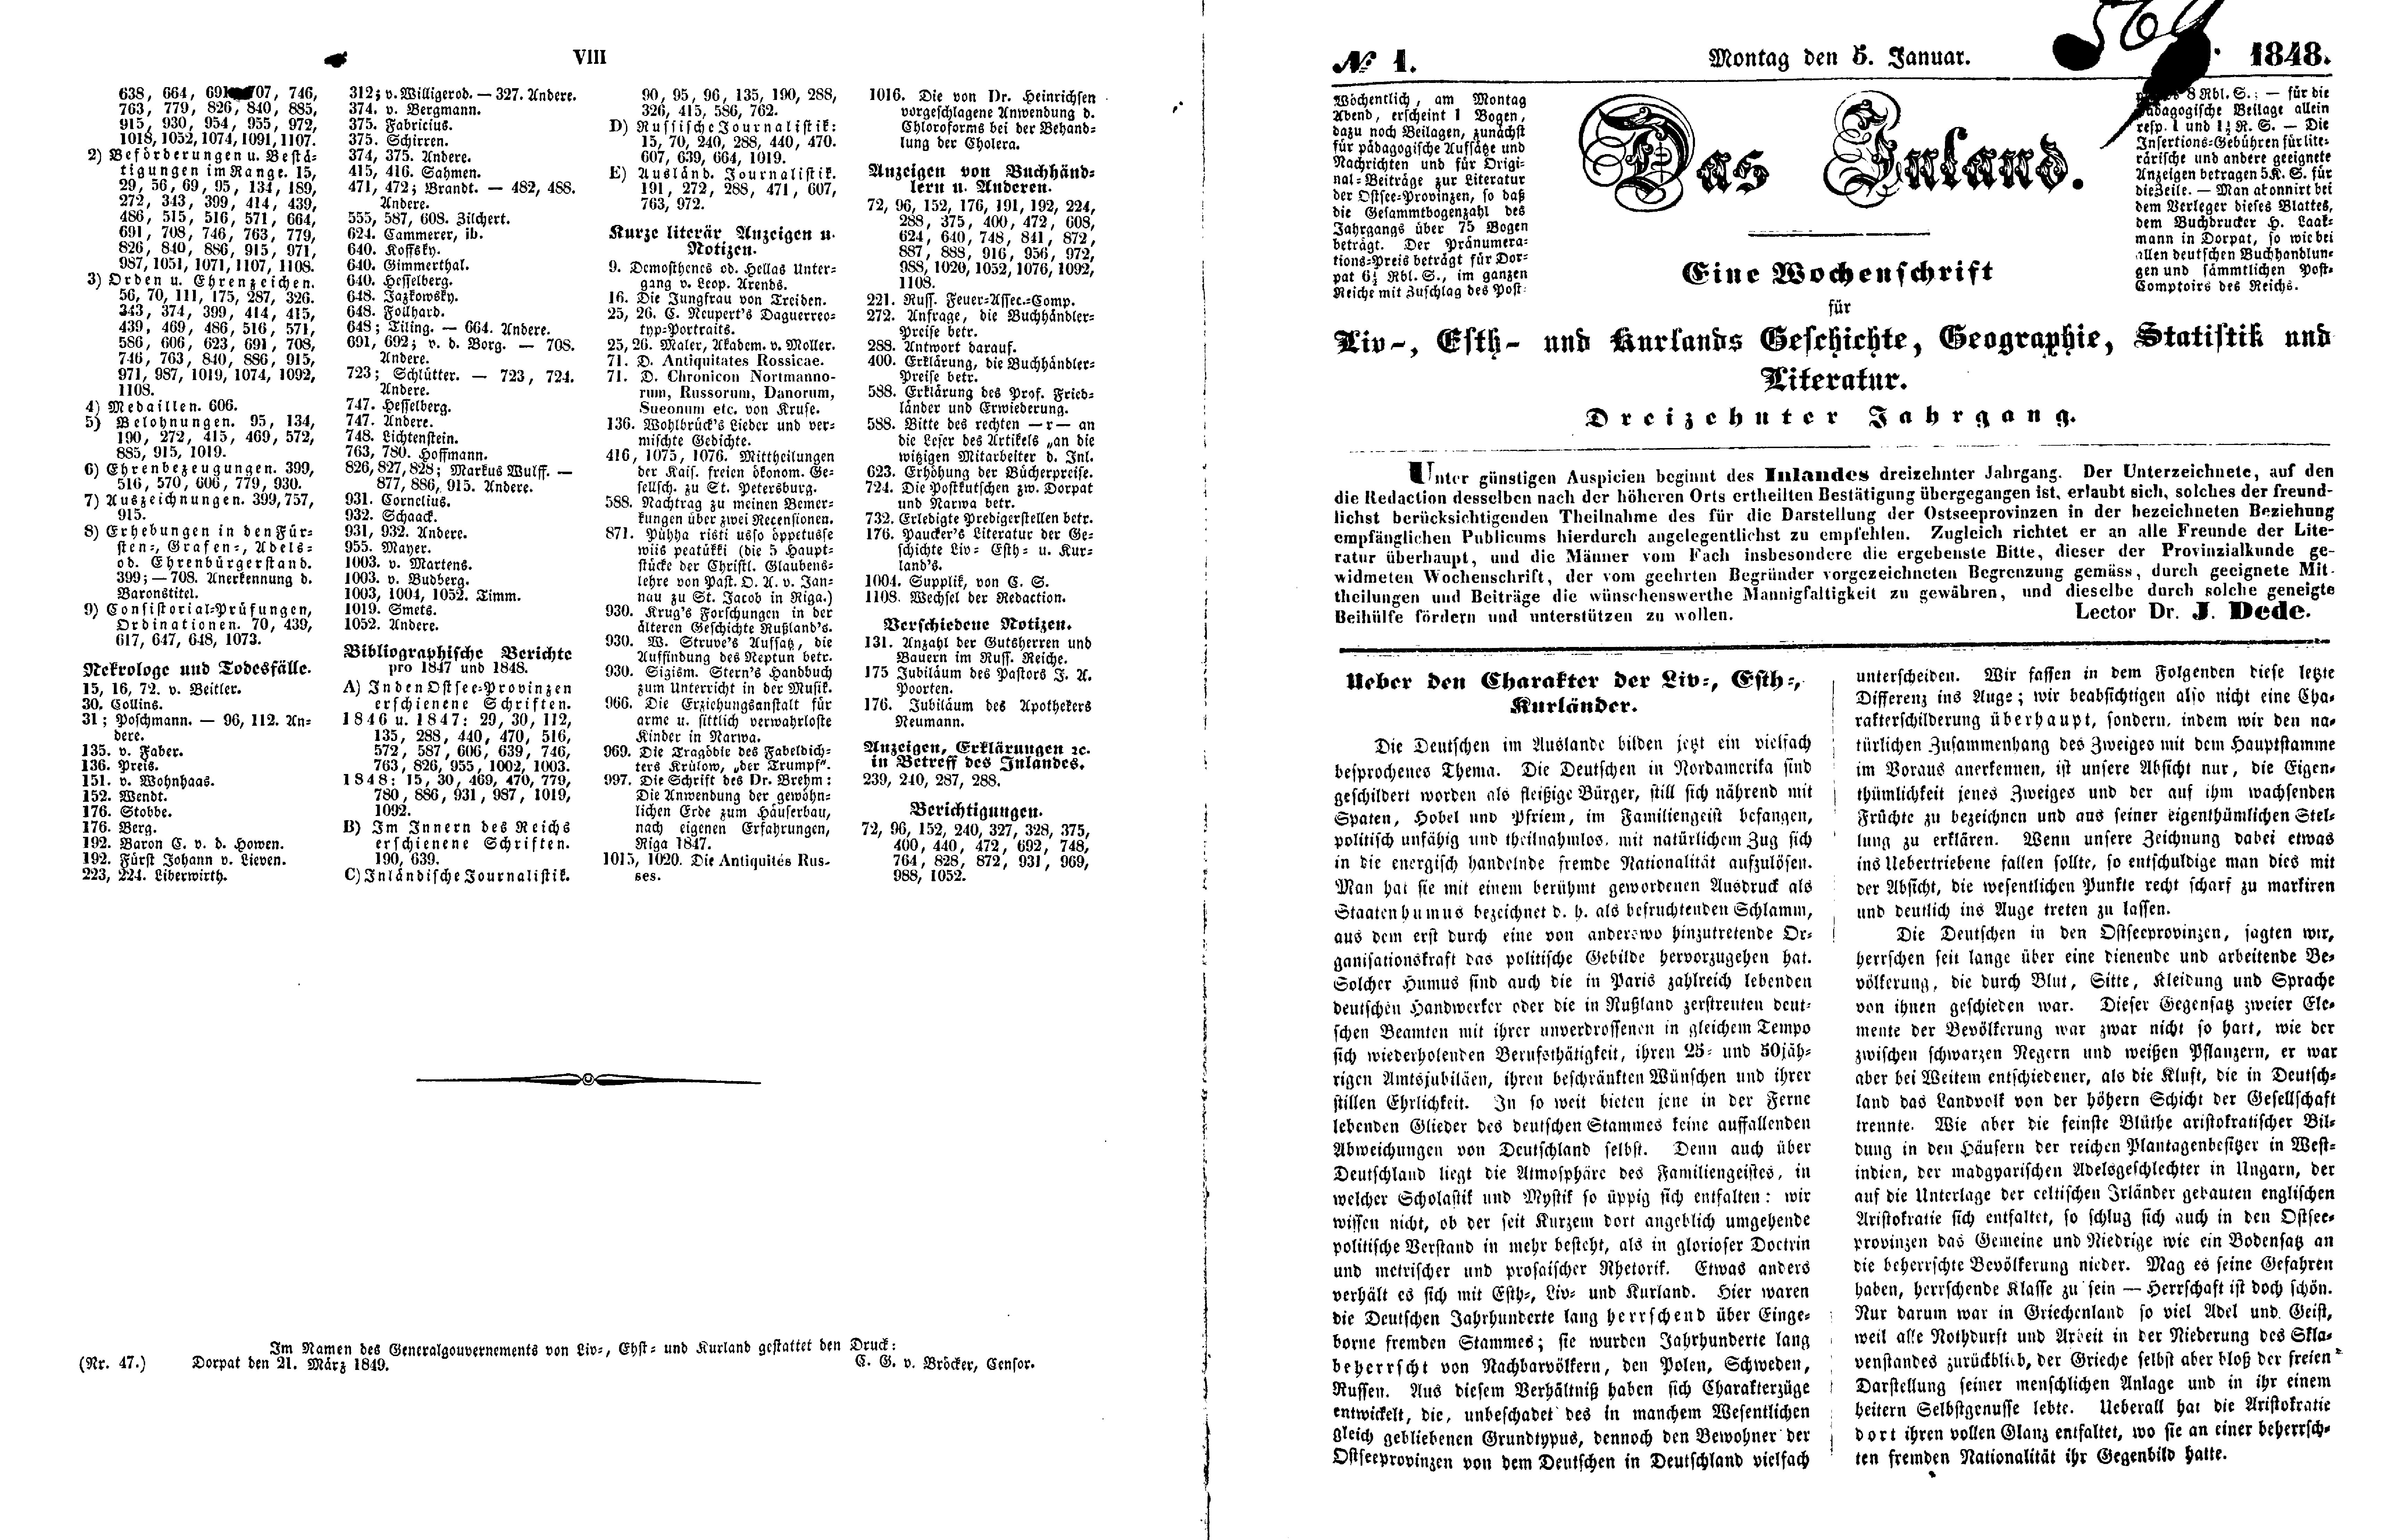 Ueber den Charakter der Liv-, Esth- und Kurländer (1848) | 1. (VIII-2) Index, Main body of text